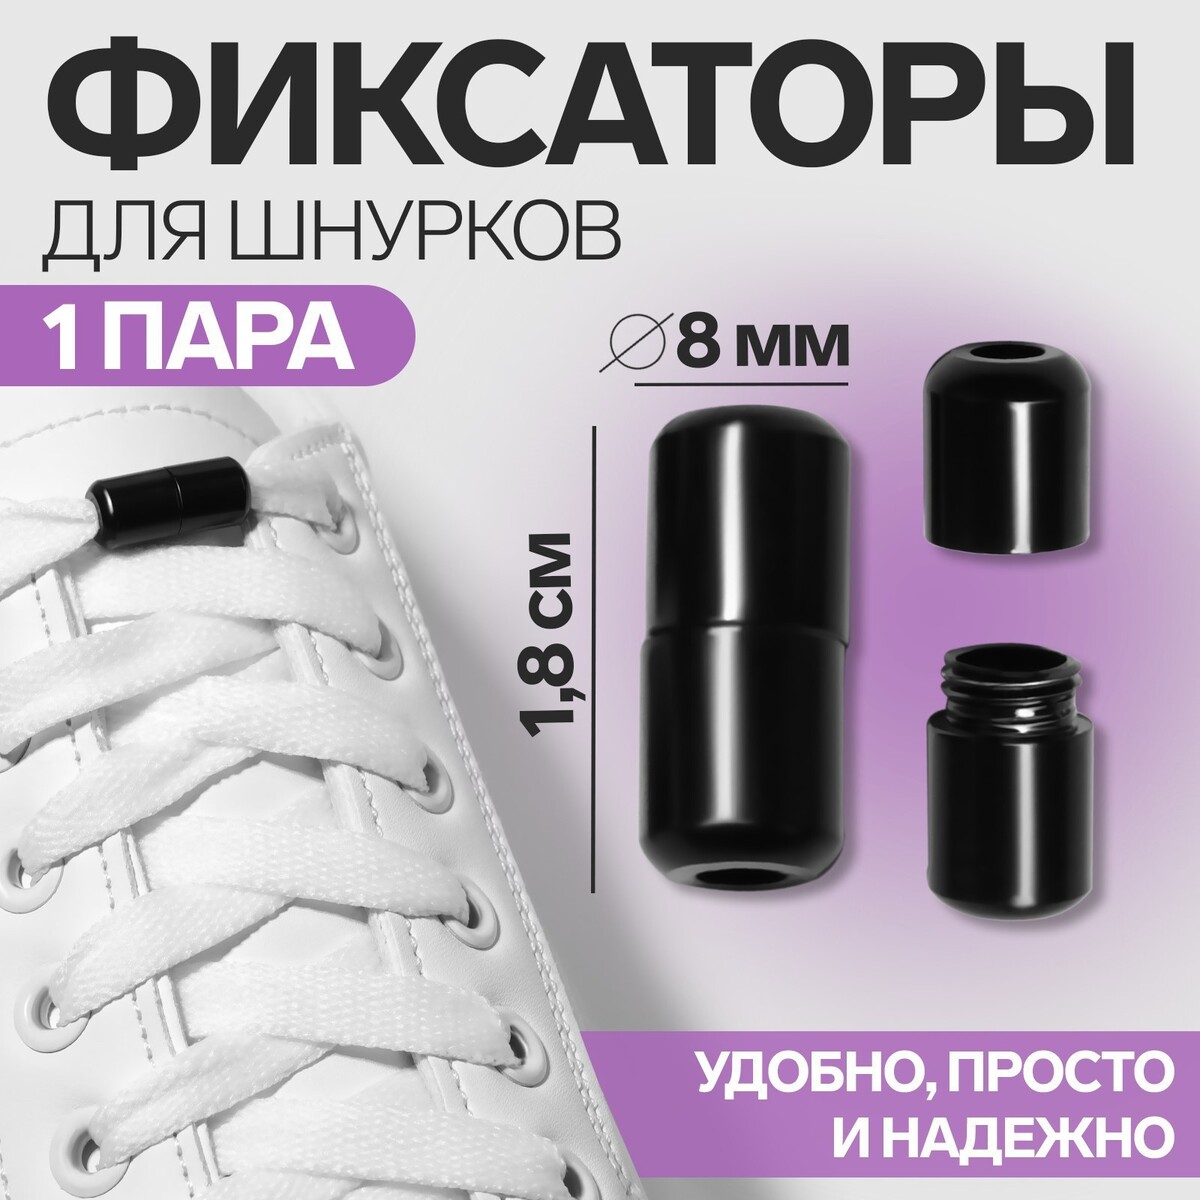 Фиксатор для шнурков, пара, d = 8 мм, 1,8 см, цвет черный